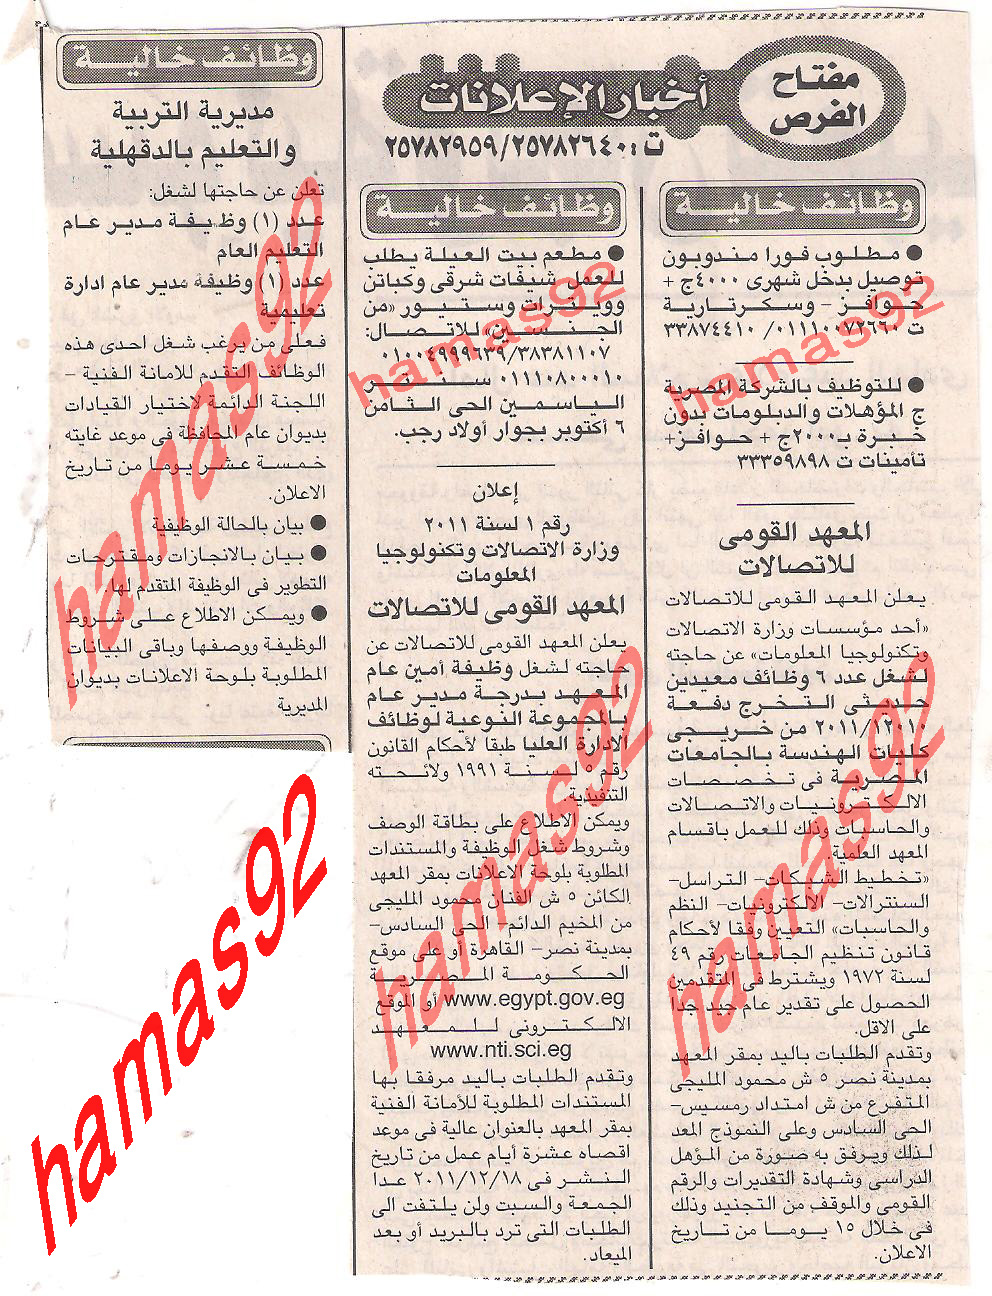 وظائف خالية من جريدة الاخبار الاحد 18 ديسمبر 2011  Picture+004